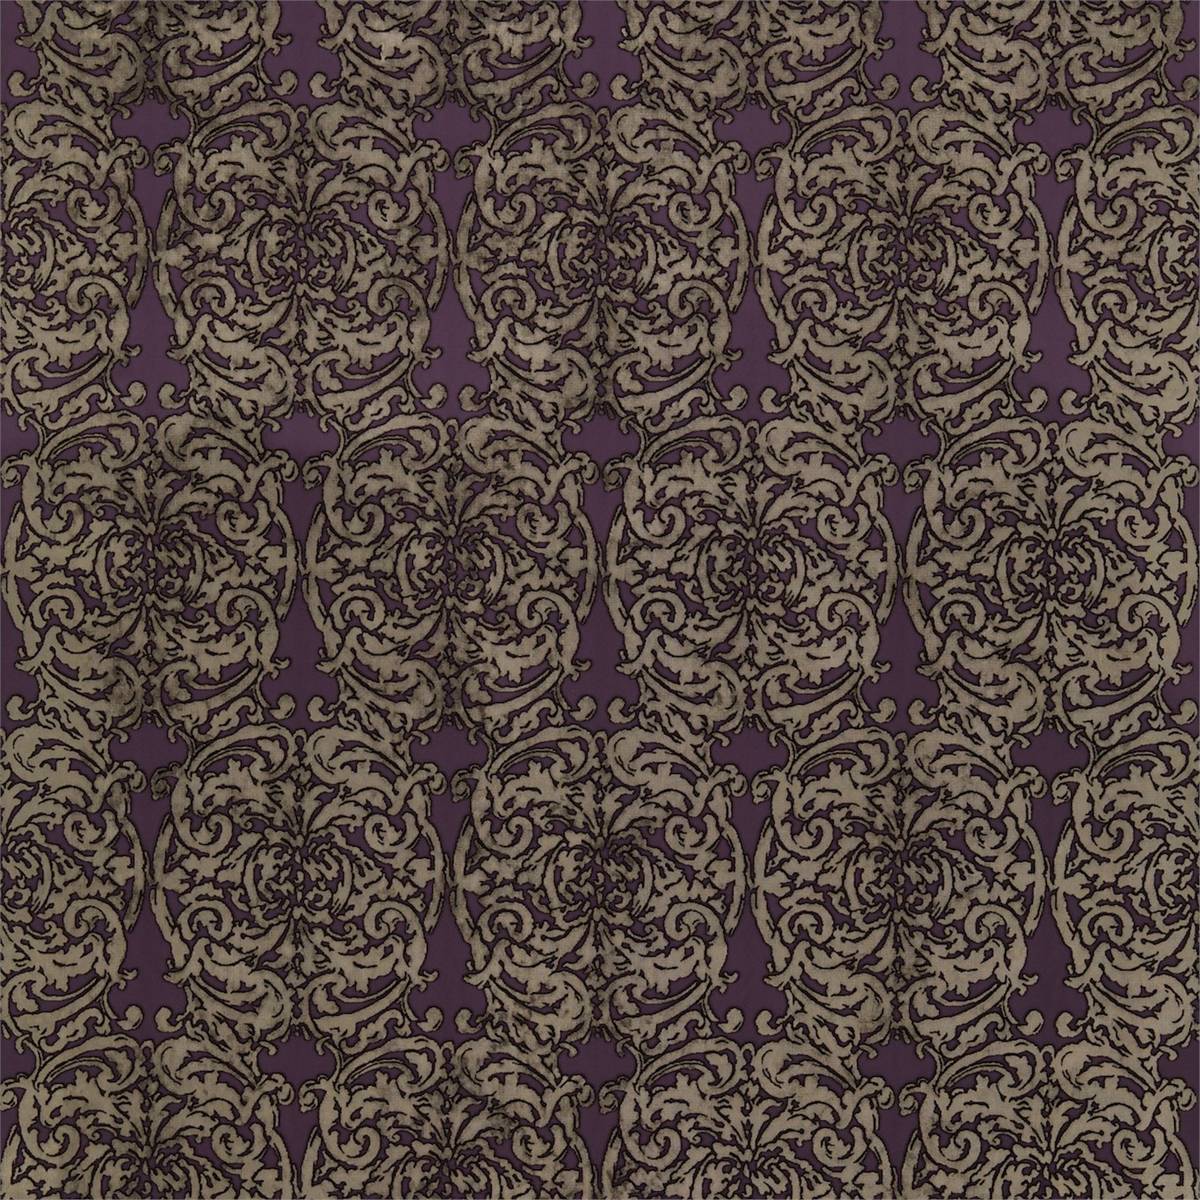 Tespi Amethyst//Mole Fabric by Zoffany